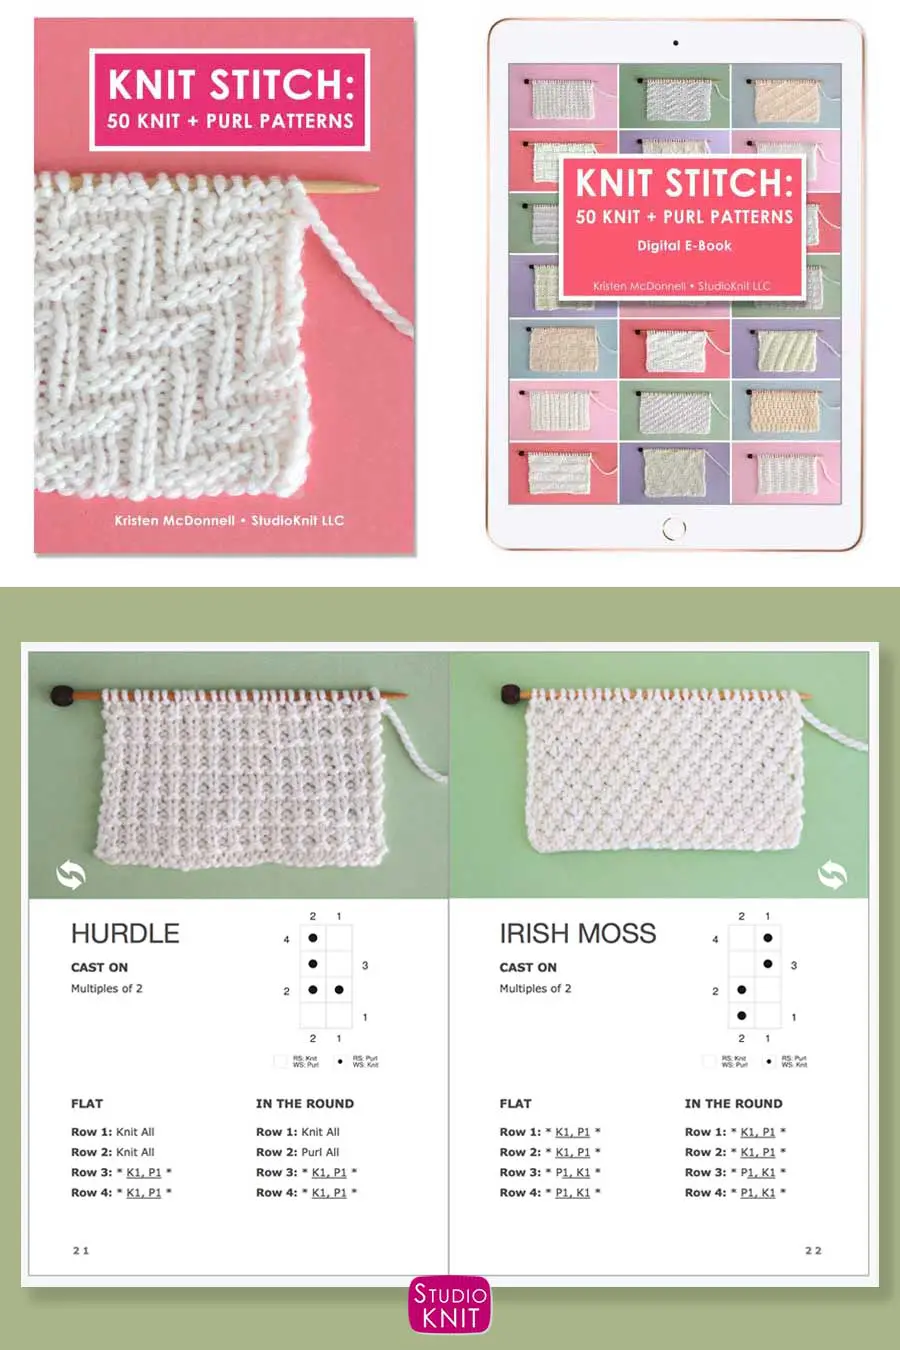 Knit Stitch Pattern Book with Hurdle and Irish Moss Stitch Patterns